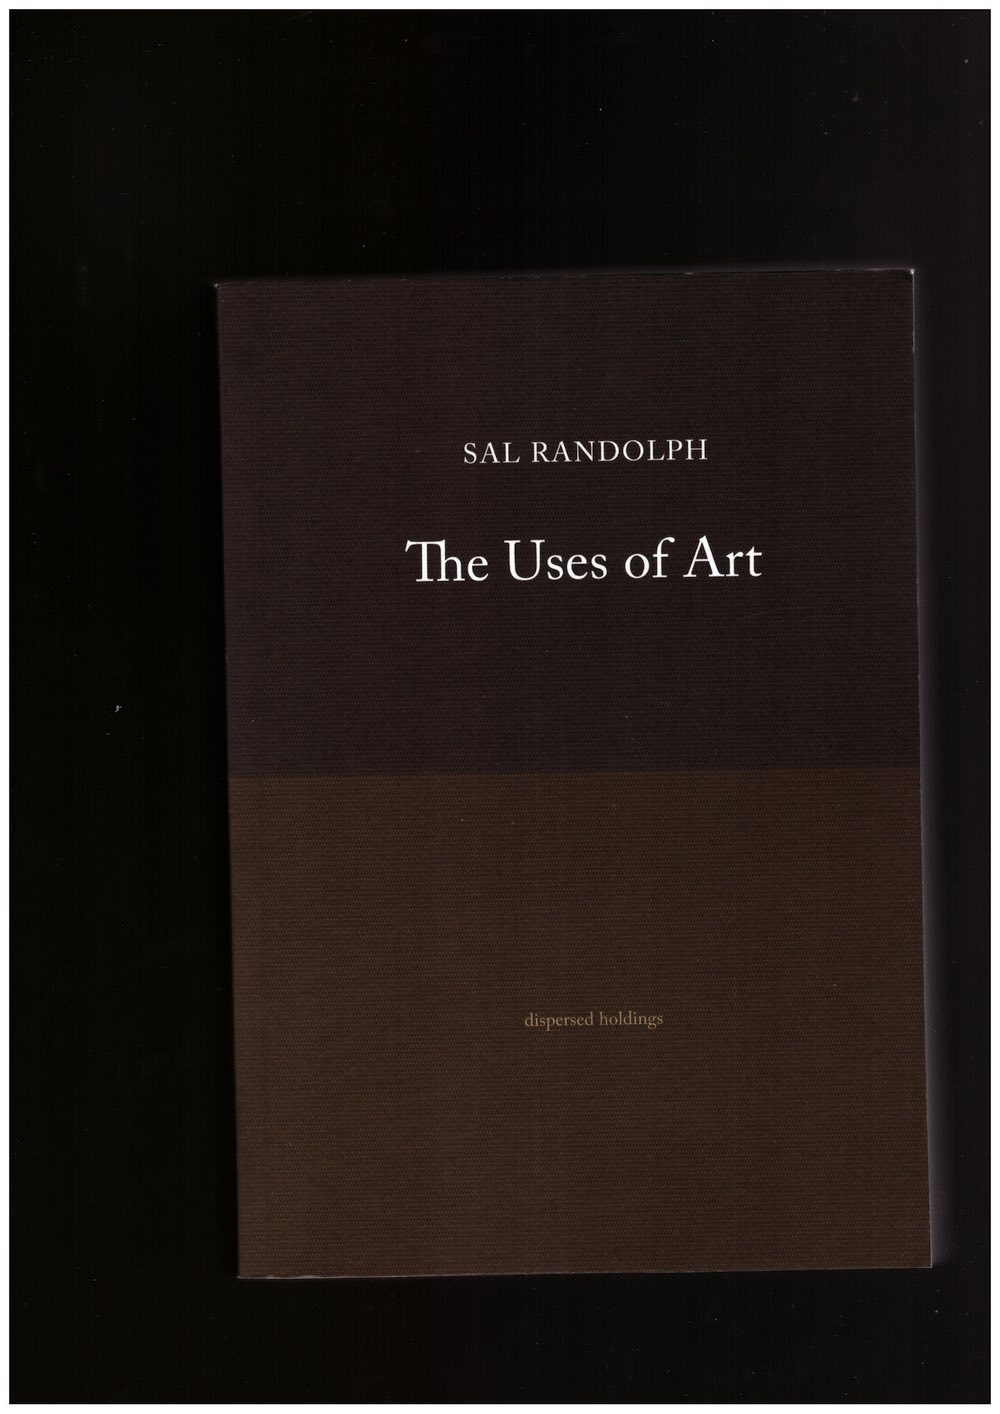 RANDOLPH, Sal - The Uses of Art